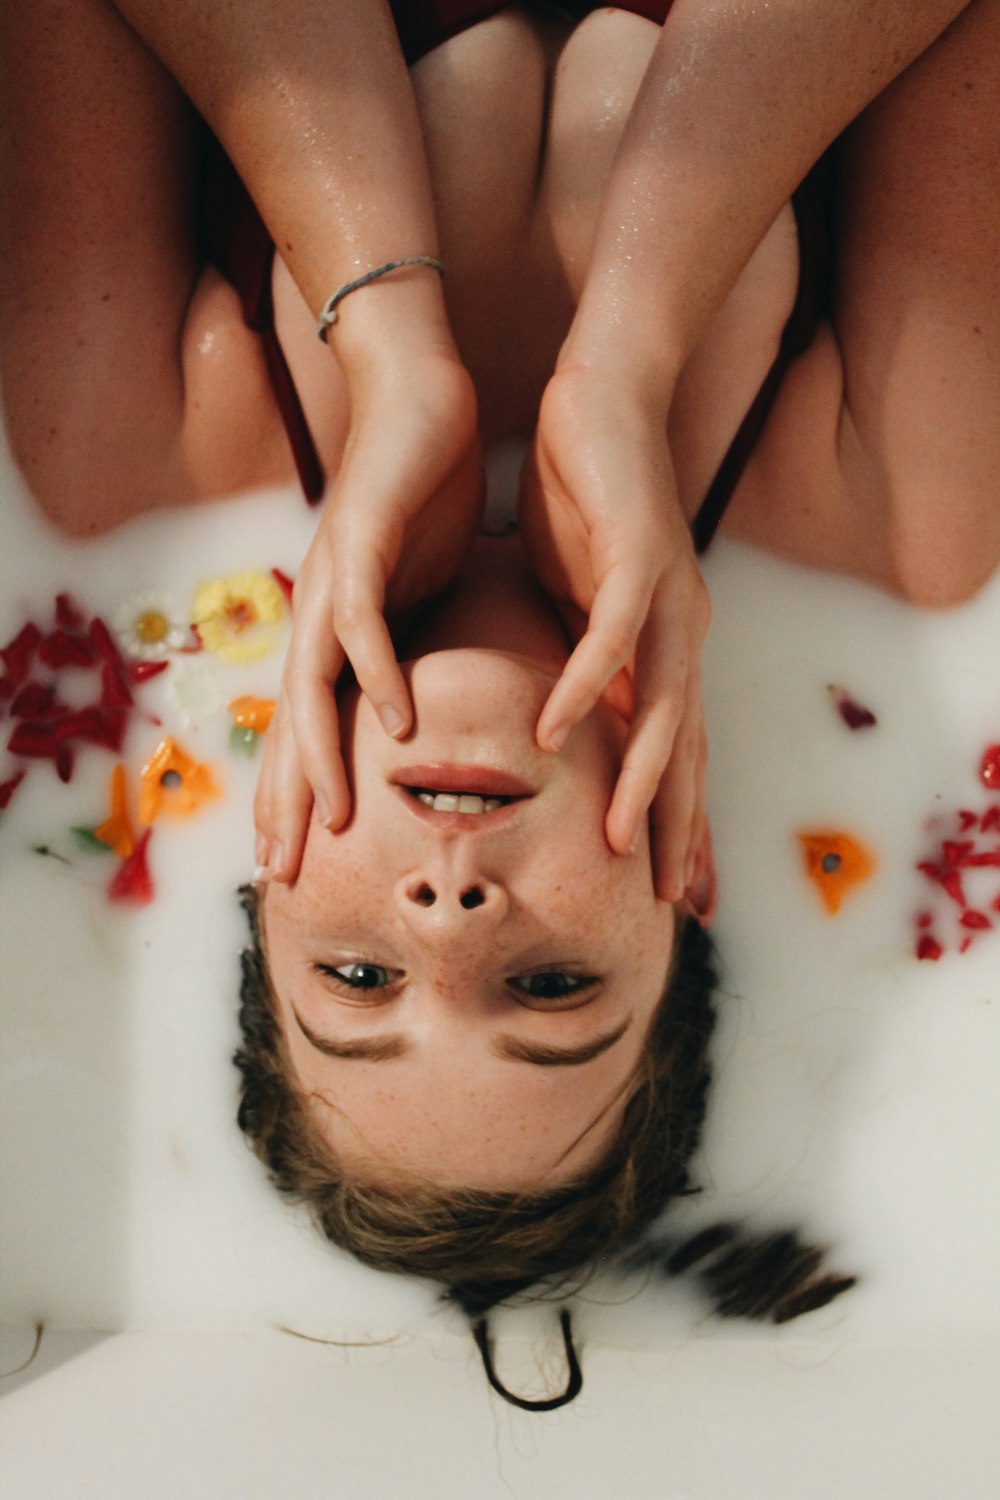 Una donna sdraiata in una vasca da bagno con le mani sulla testa